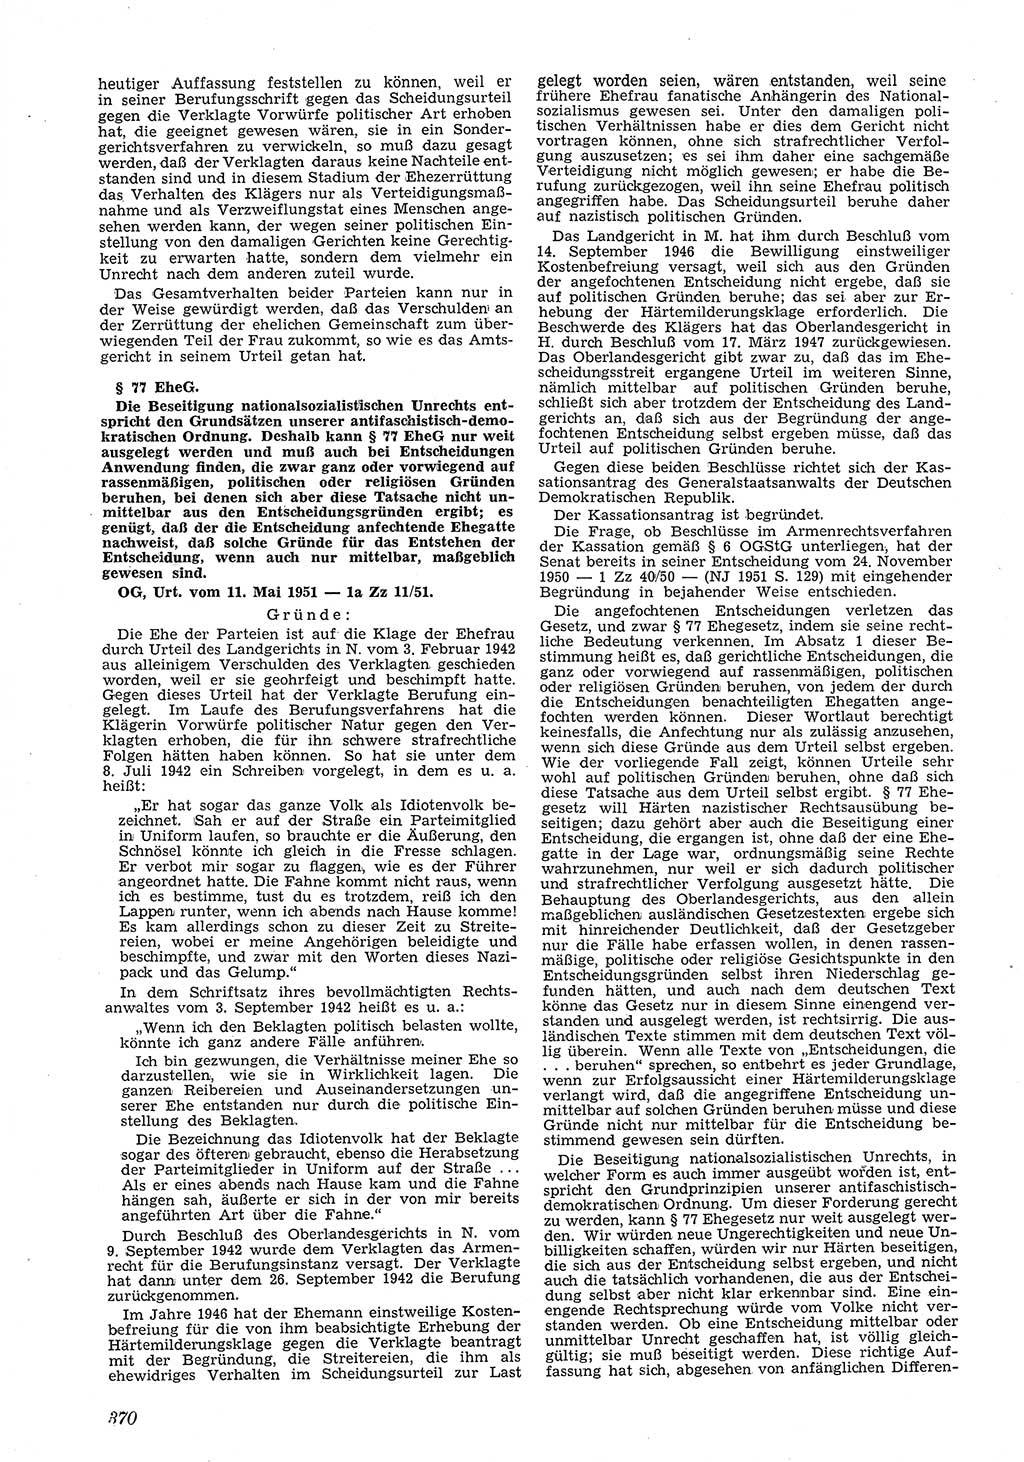 Neue Justiz (NJ), Zeitschrift für Recht und Rechtswissenschaft [Deutsche Demokratische Republik (DDR)], 5. Jahrgang 1951, Seite 370 (NJ DDR 1951, S. 370)